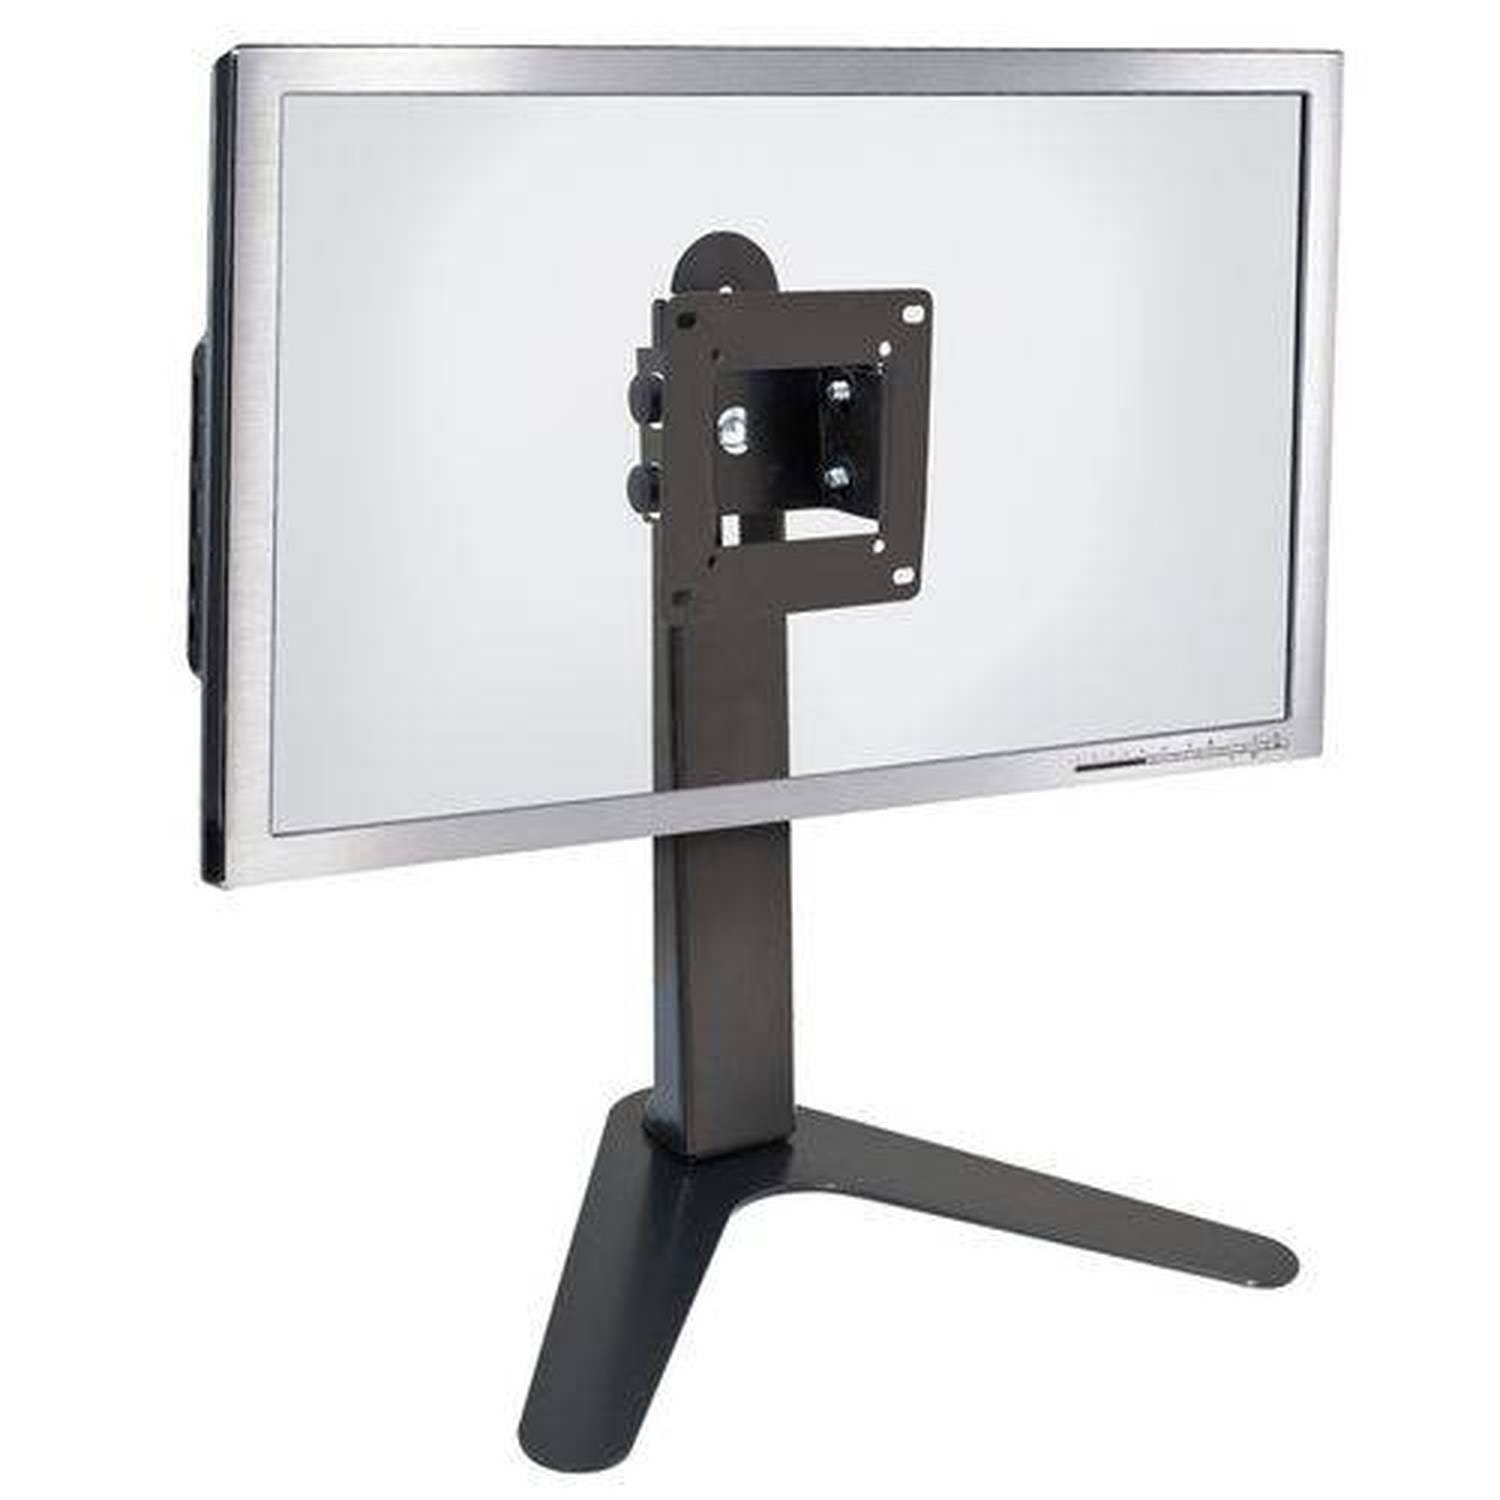 Suporte de Mesa/Pedestal Ergonômico Nr17 para Monitor Led/LCD/3D de 10" A 24" com Inclinação Mt-Slim - - 1